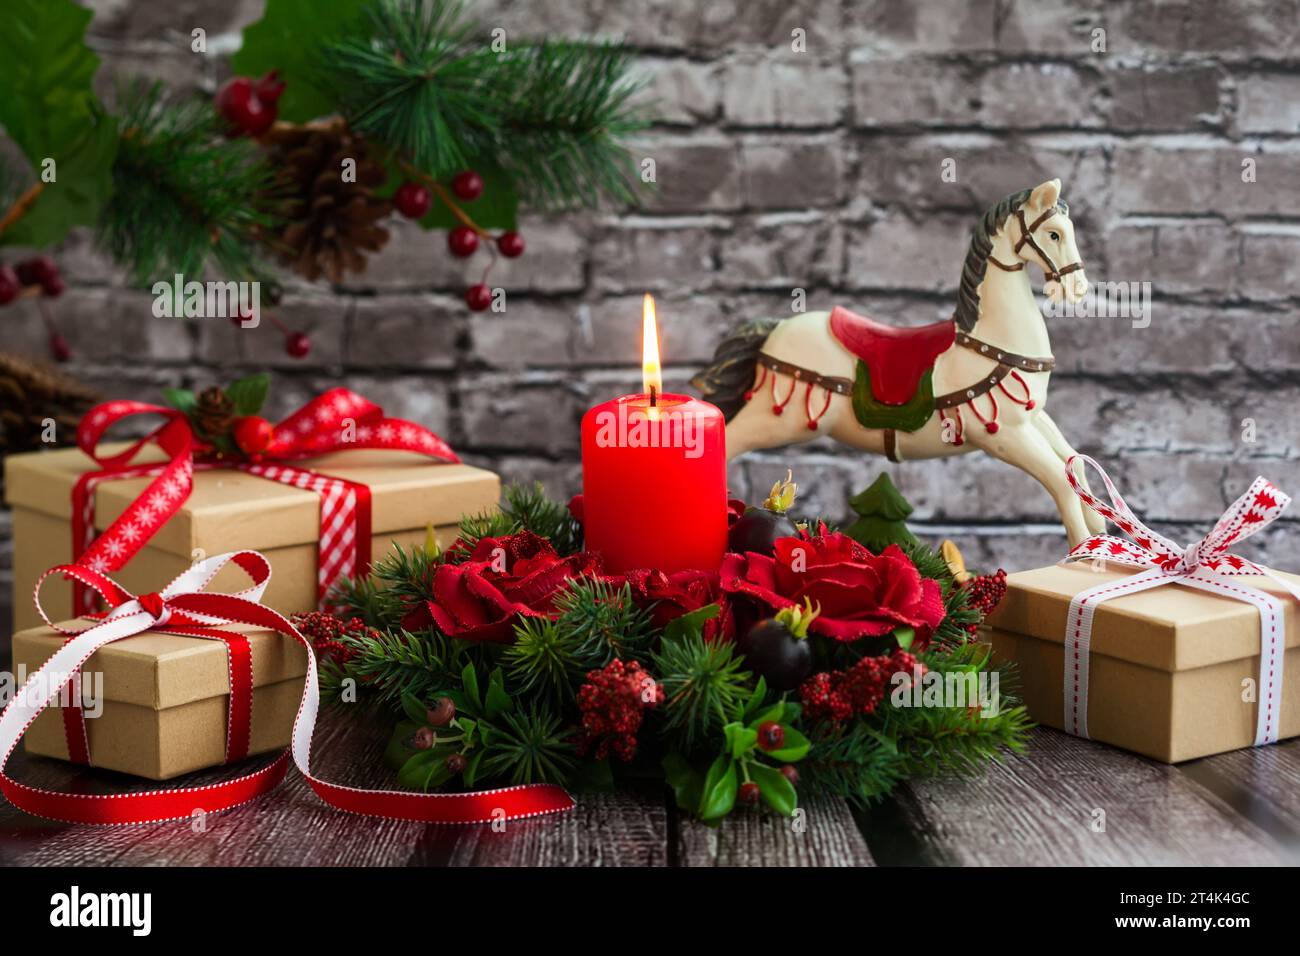 Cavallo a dondolo rosso con decori natalizi - Mobilia Store Home & Favours